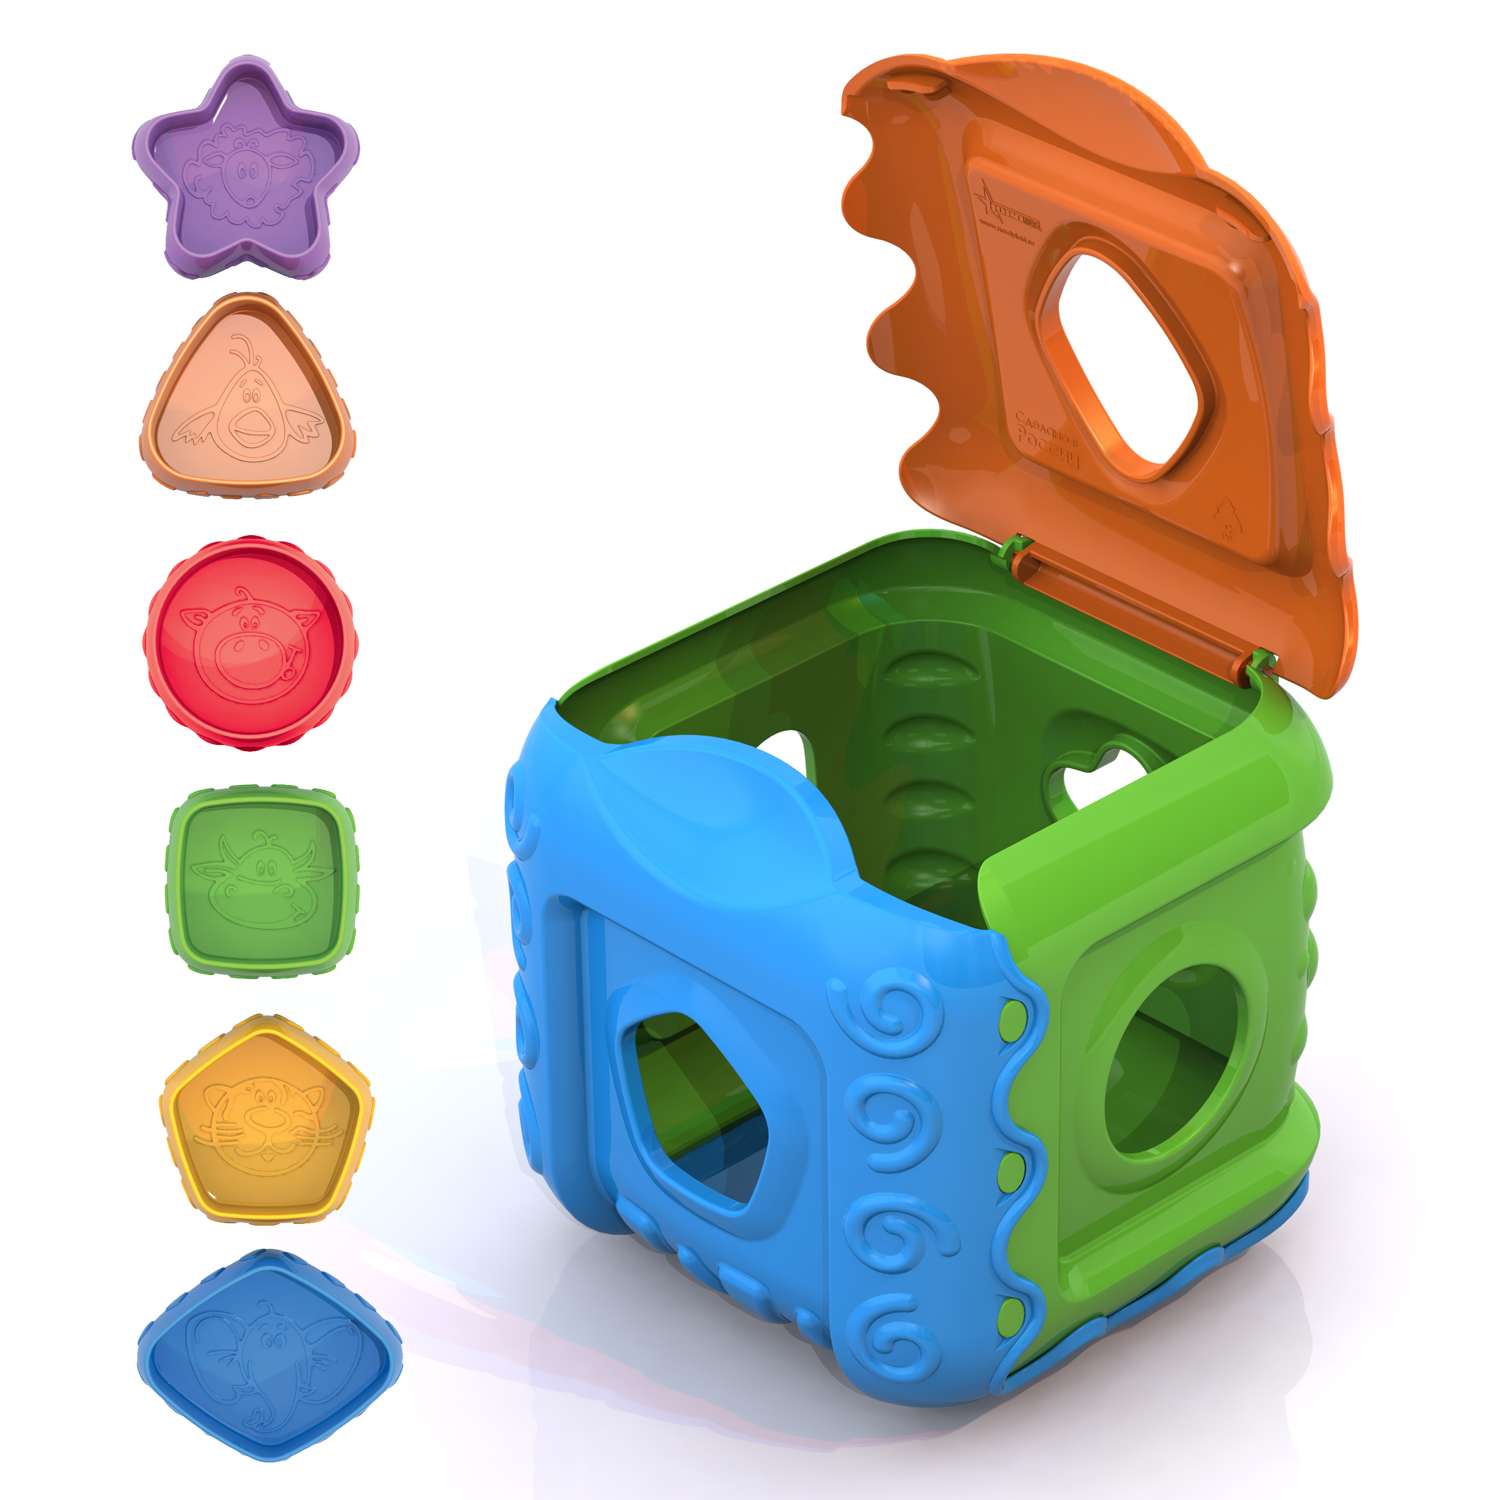 Дидактическая игрушка Нордпласт Кубик - фото 2